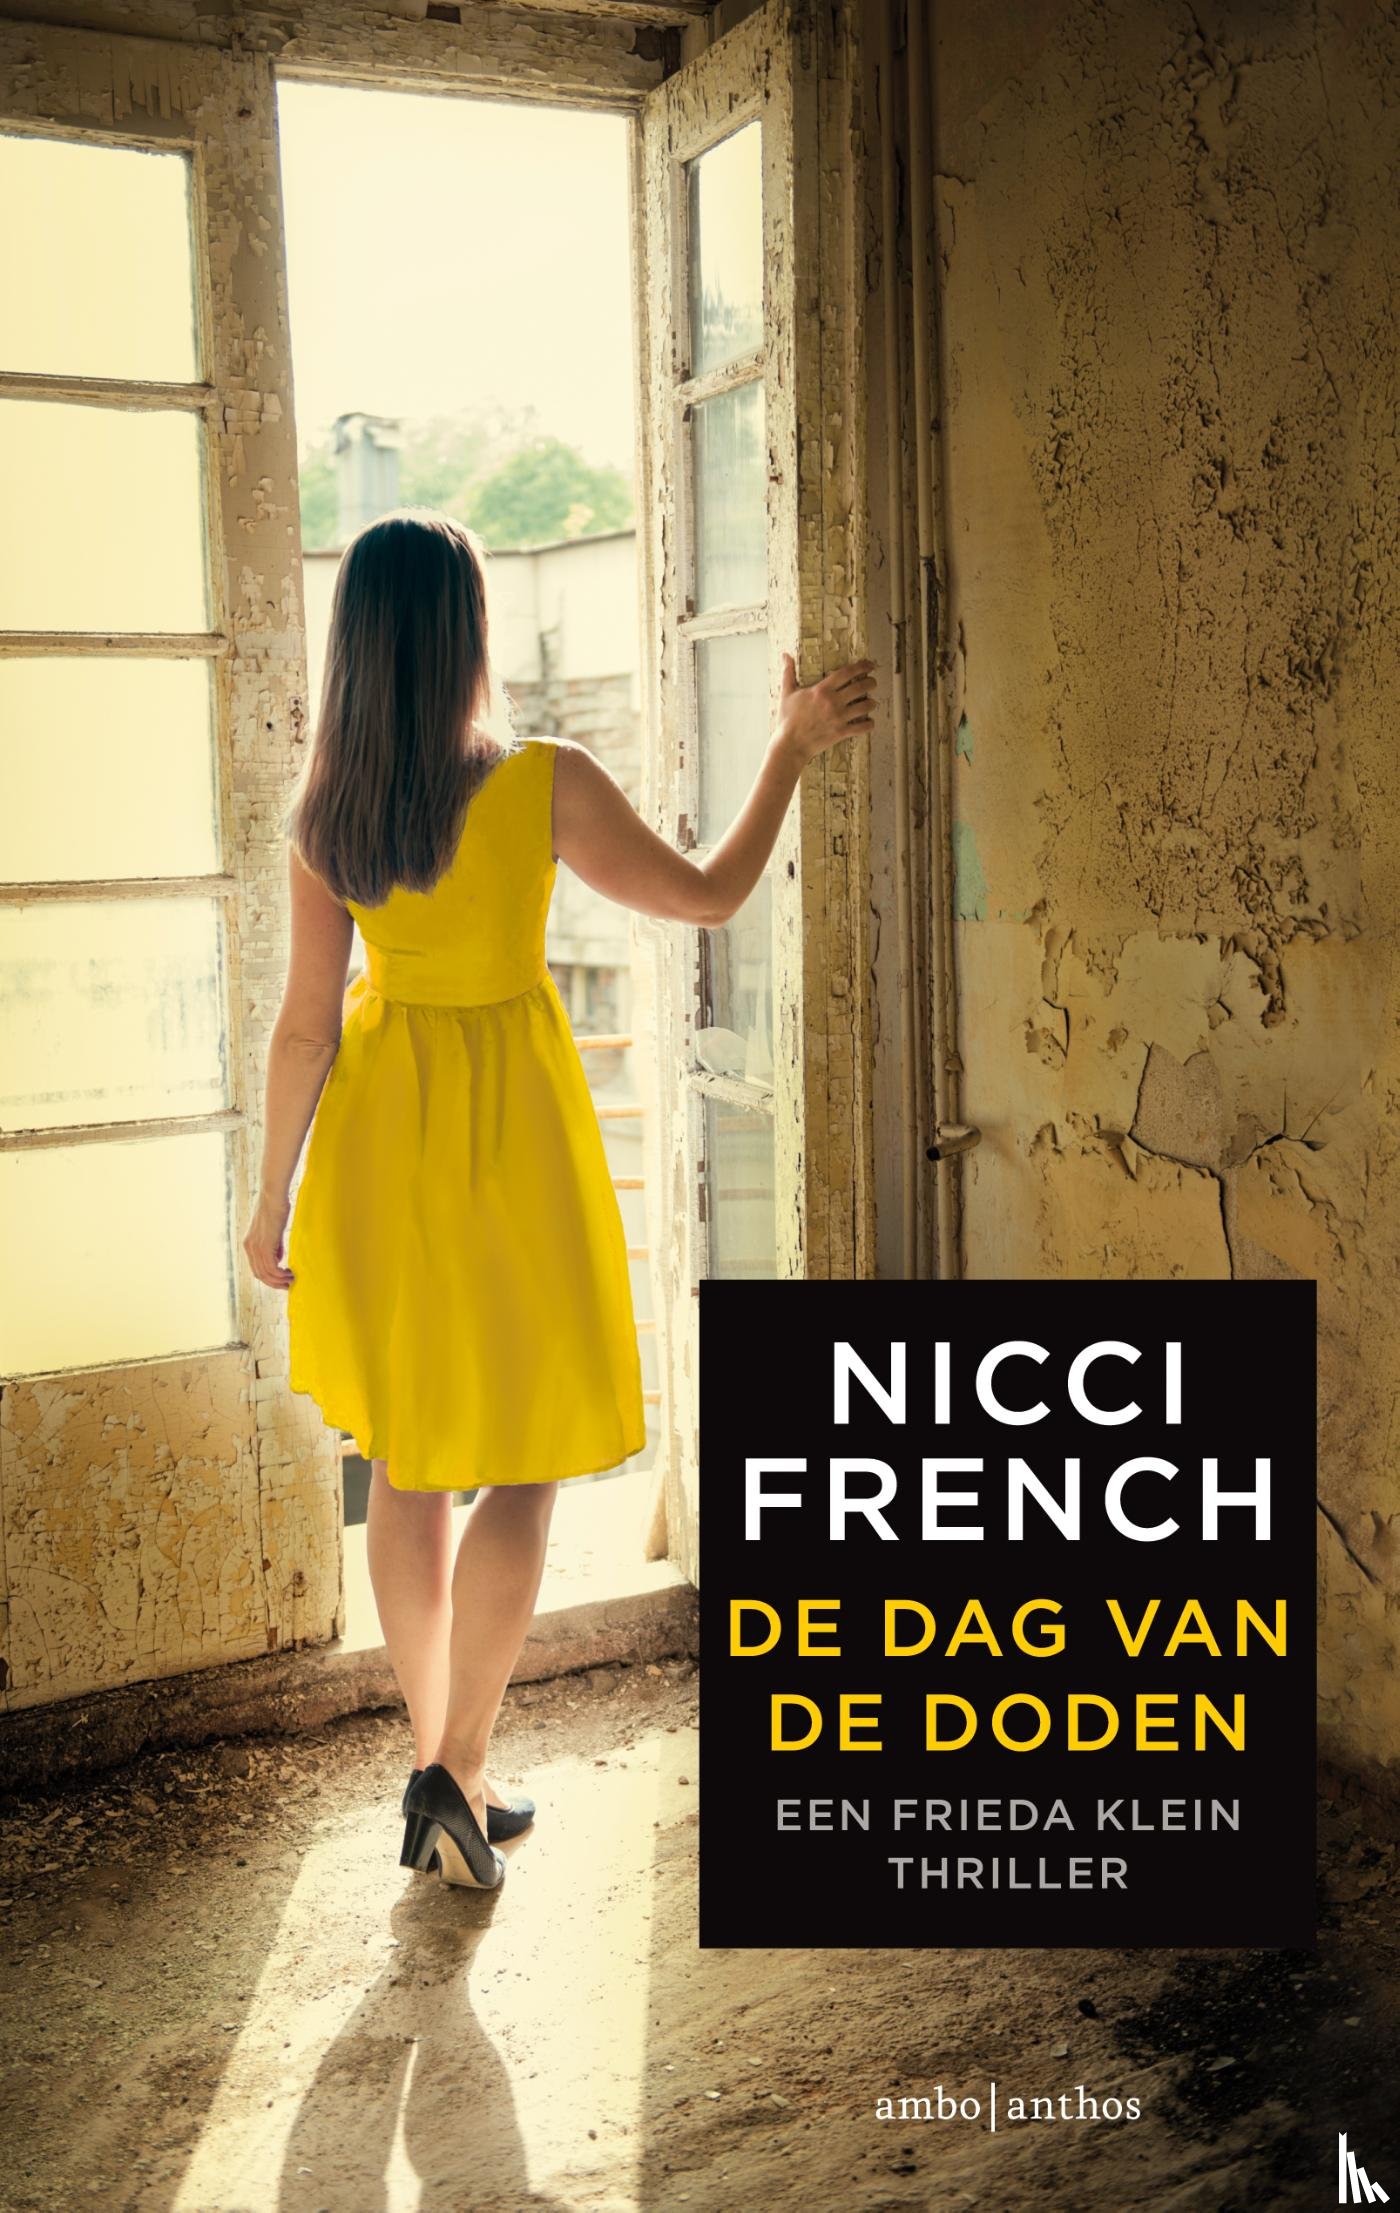 French, Nicci - De dag van de doden